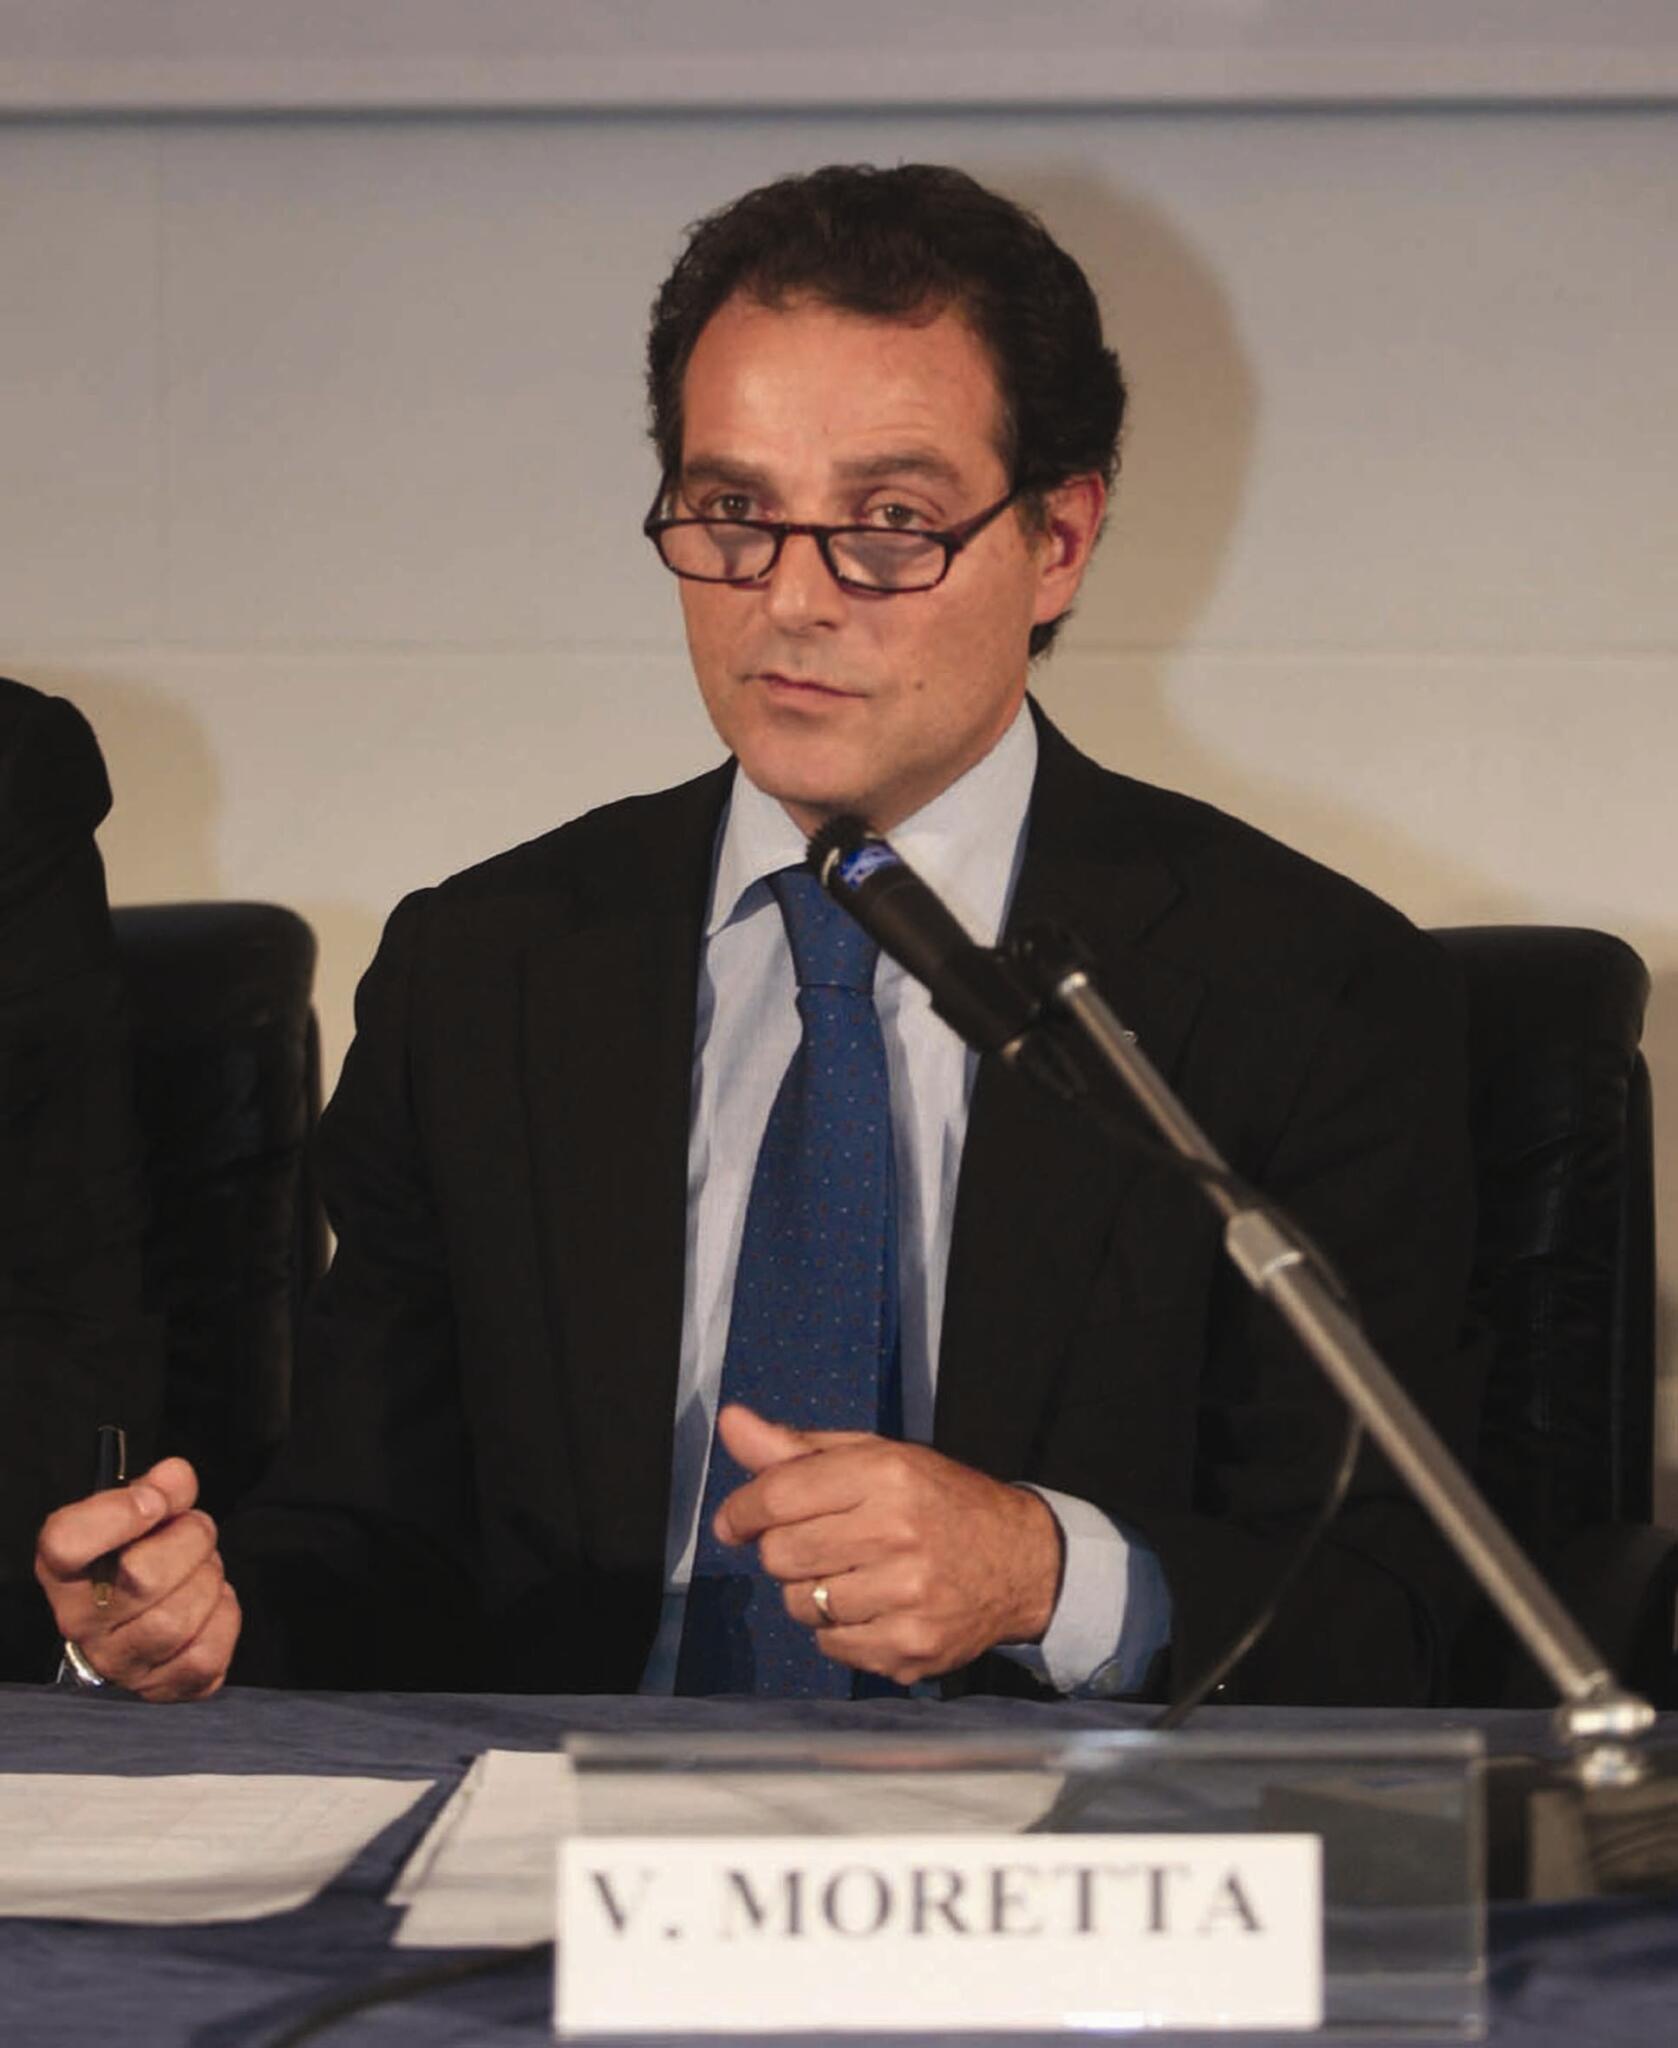 Moretta(Commercialisti): “No al Daspo per i professionisti”